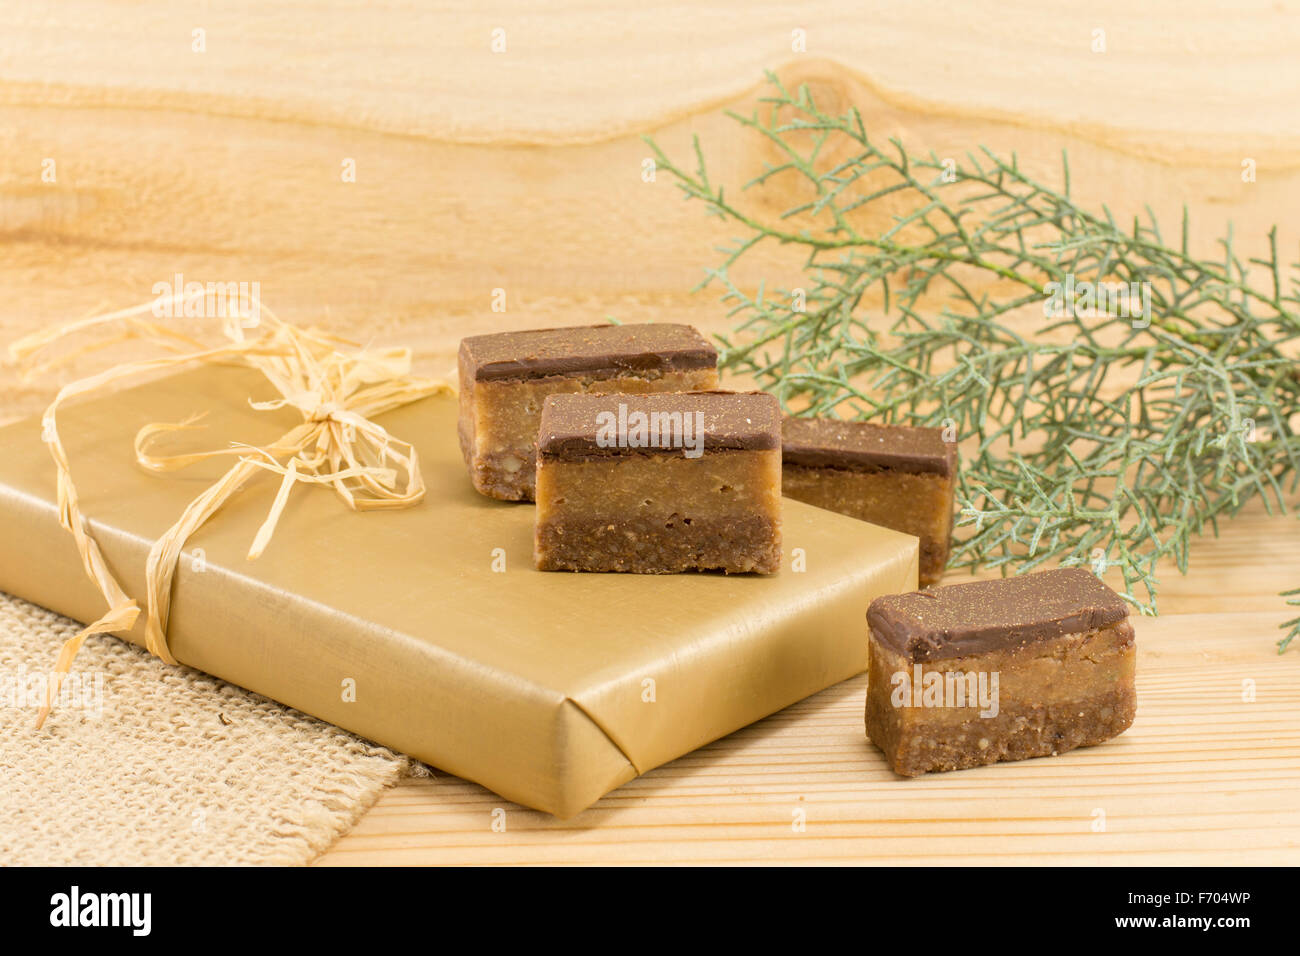 Caramelos dulces de chocolate y envuelto tratar sobre un fondo de madera Foto de stock